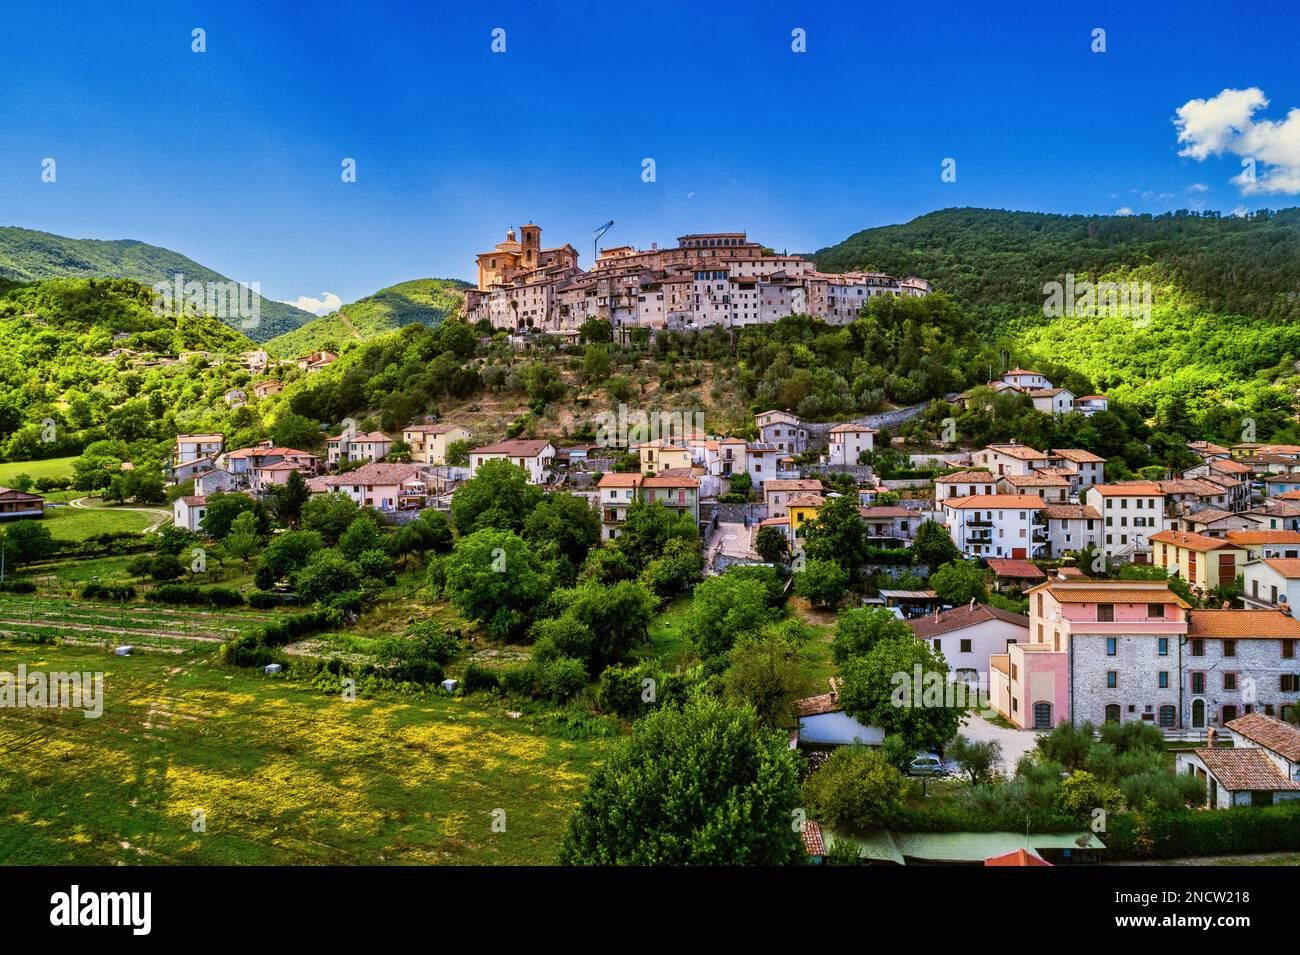 Lo storico borgo medievale di Contigliano arroccato su una collina che domina la piana di Rieti. Contigliano, provincia di Rieti, Lazio, Italia, Europa Foto Stock